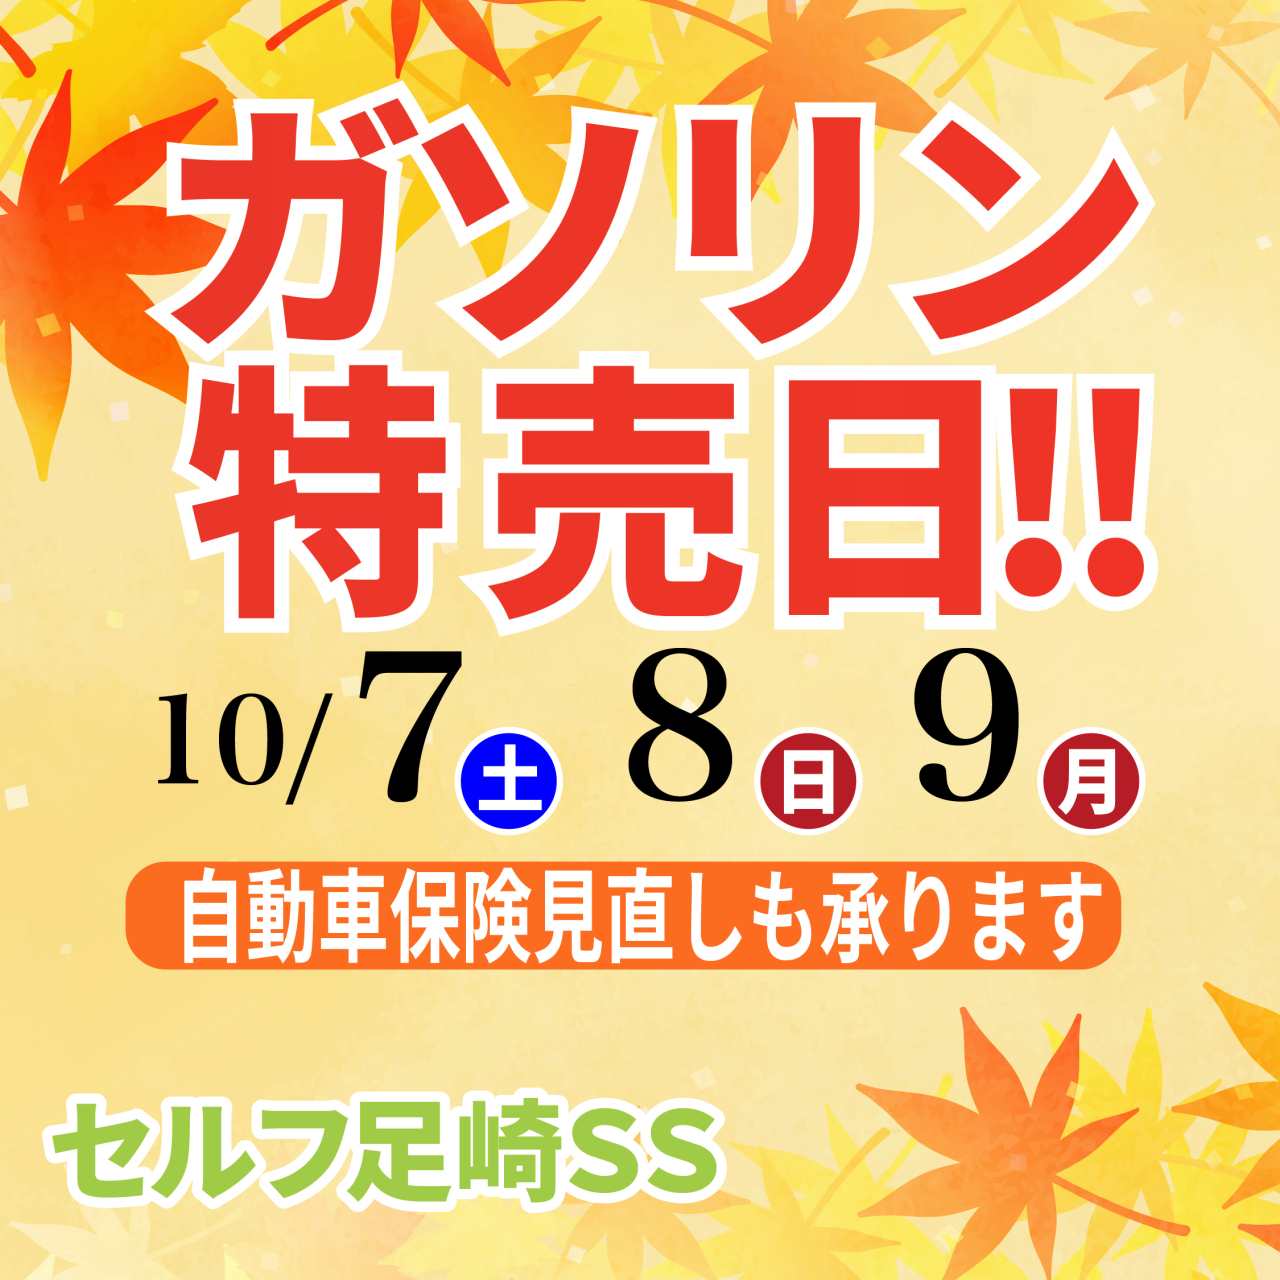 ガソリン特売!!10/7(土)・8(日)・9(月・祝)